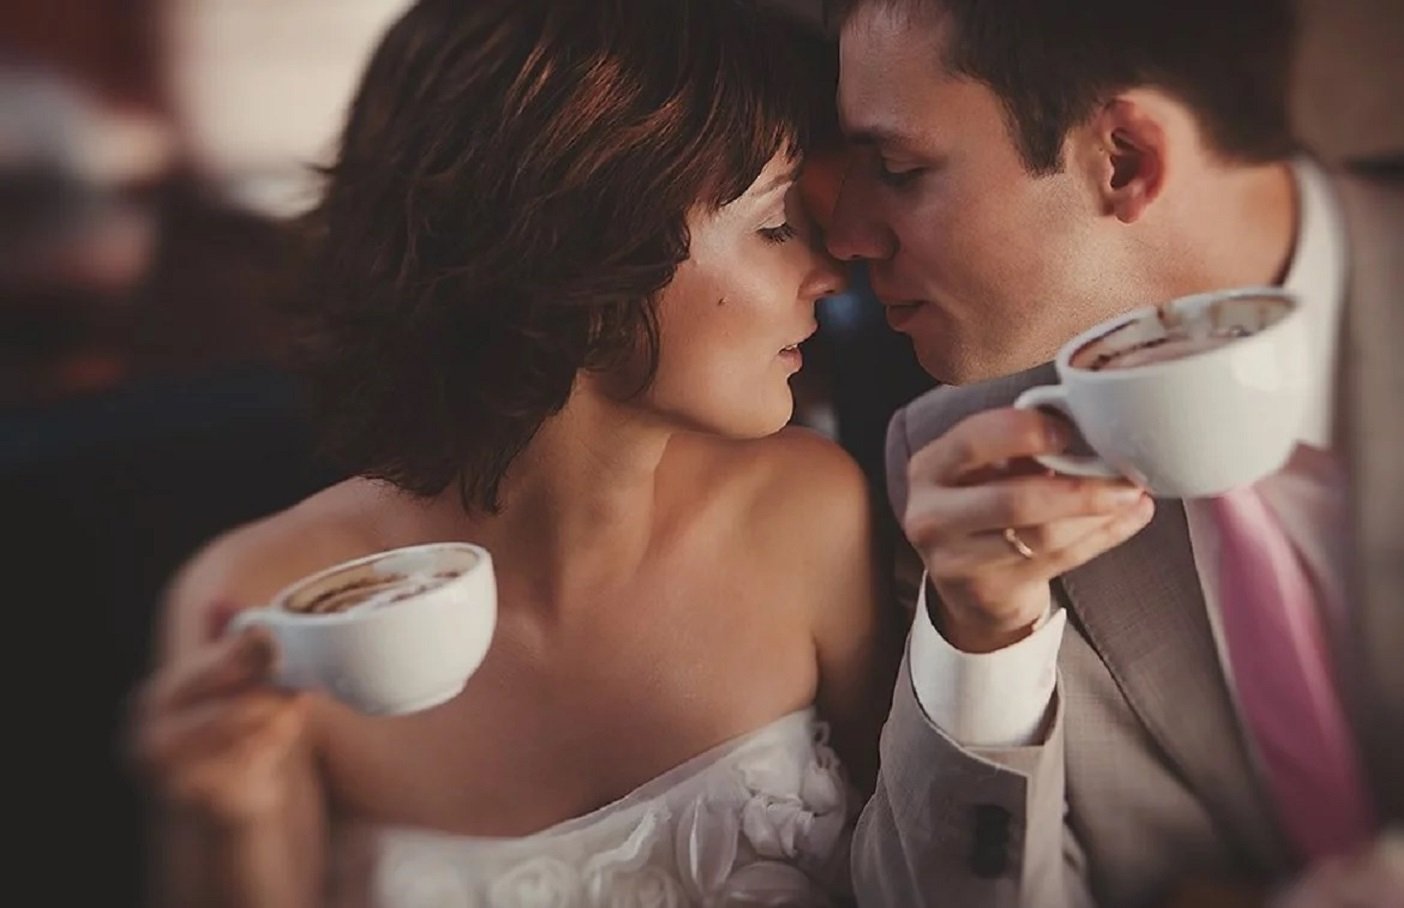 До вечера было много еще времени. Кофе на двоих. Романтическое утро. Доброе утро кофе вдвоем. Чаепитие вдвоем.